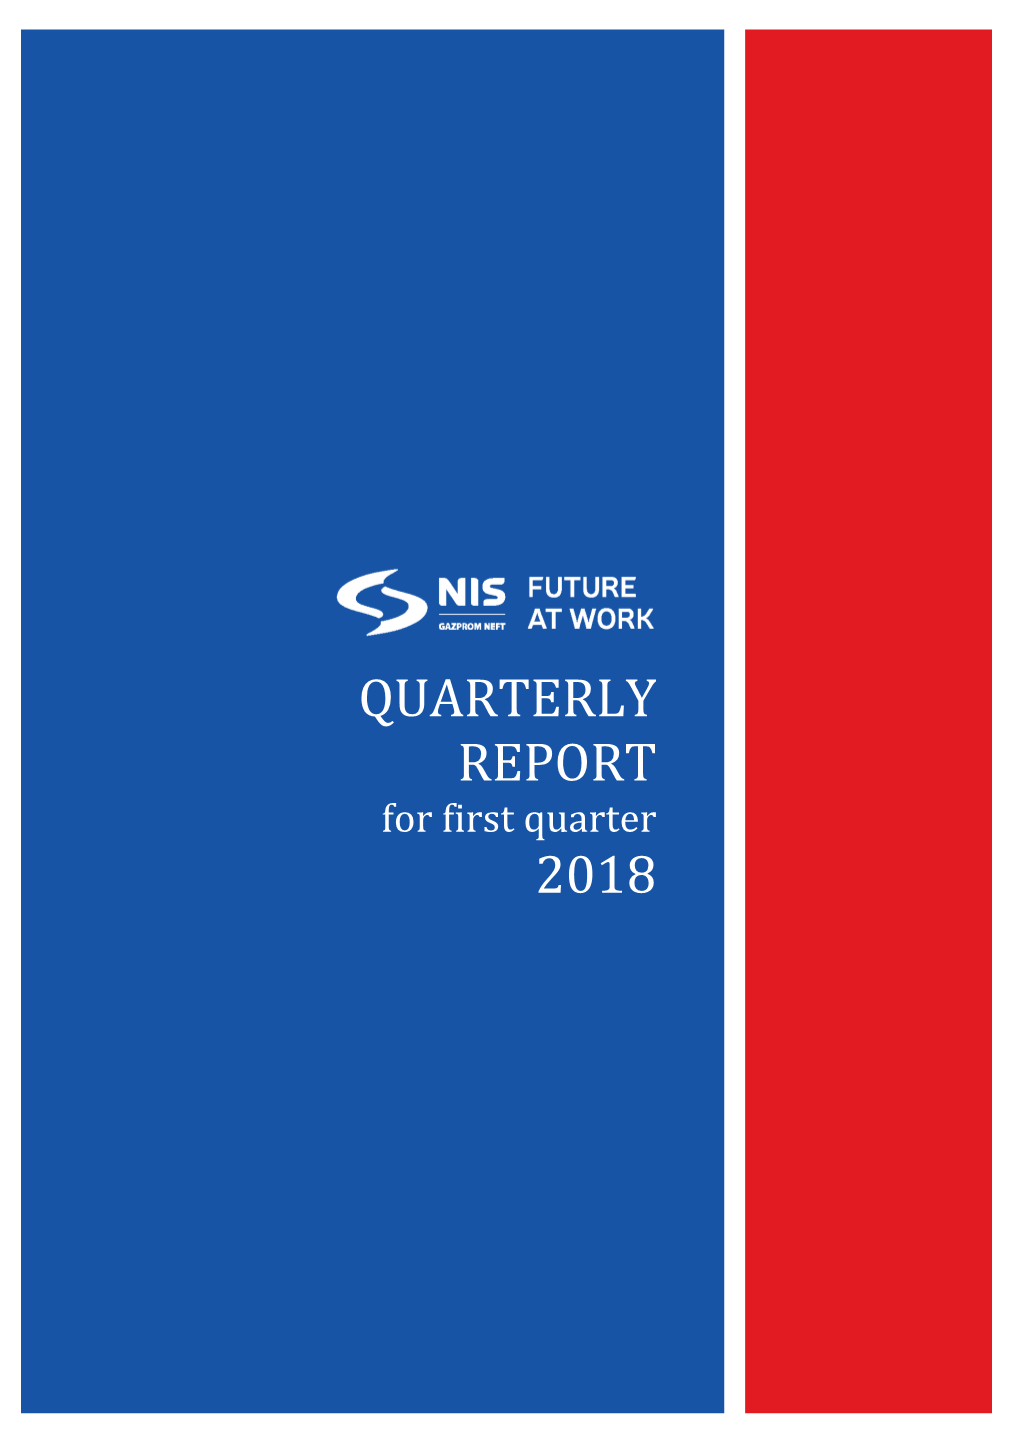 Quarterly Report for First Quarter of 2018